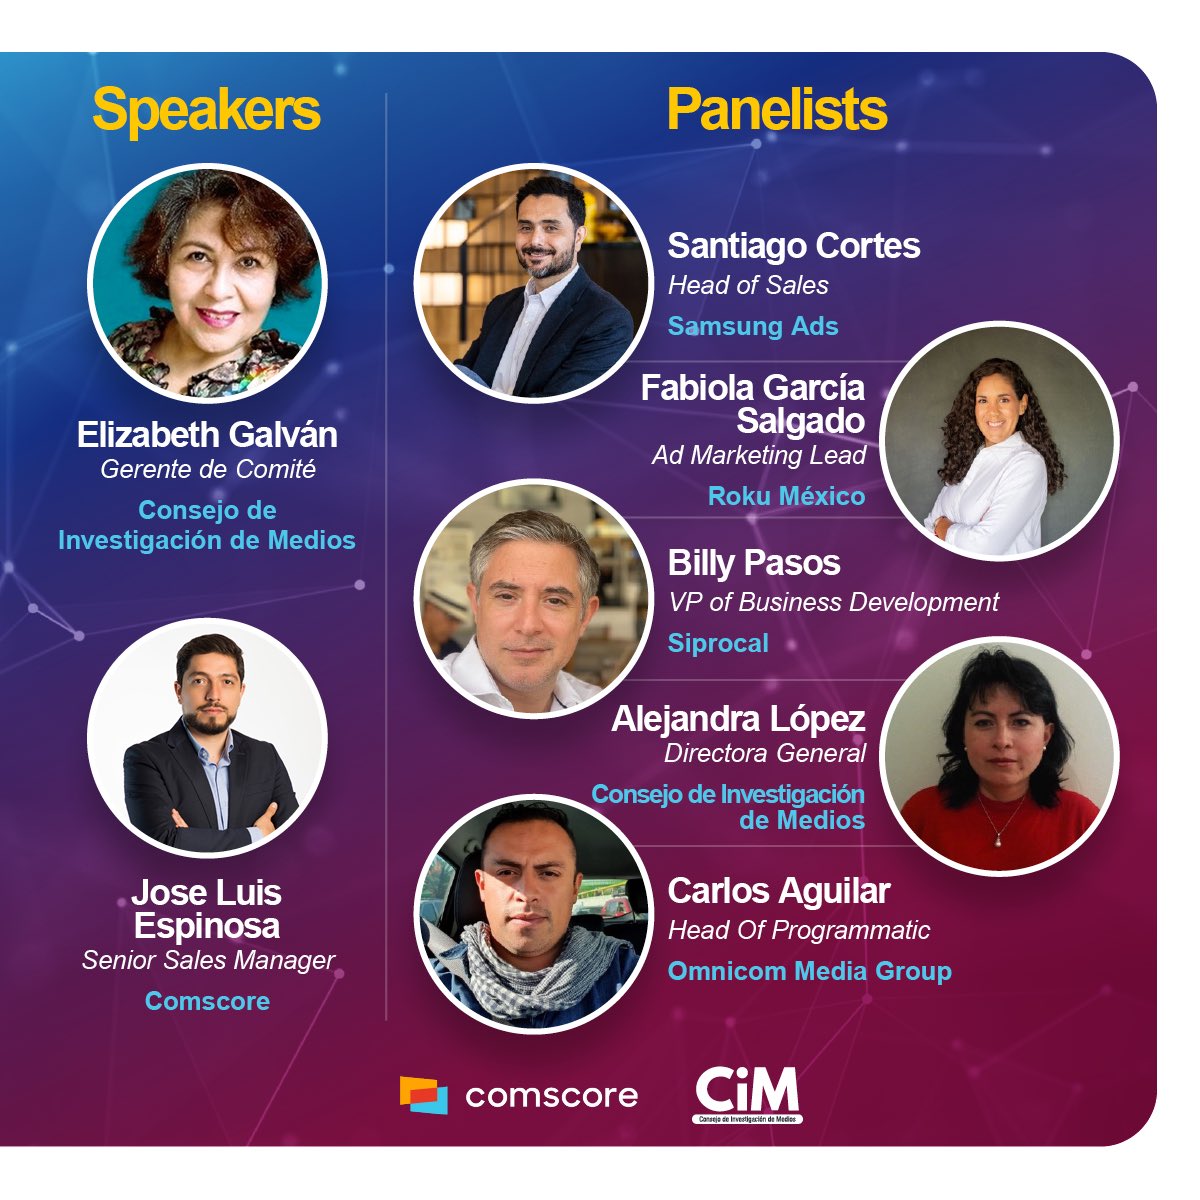 ¡Únete a nosotros y el CiM MX mientras presentamos los descubrimientos sobre 
#ConnectedTV, Addressable Advertising y OTT en México! 

Nuestro panel de expertos analizará las perspectivas de crecimiento de CTV en el país. 

Regístrate: lnkd.in/dx8rBzA8